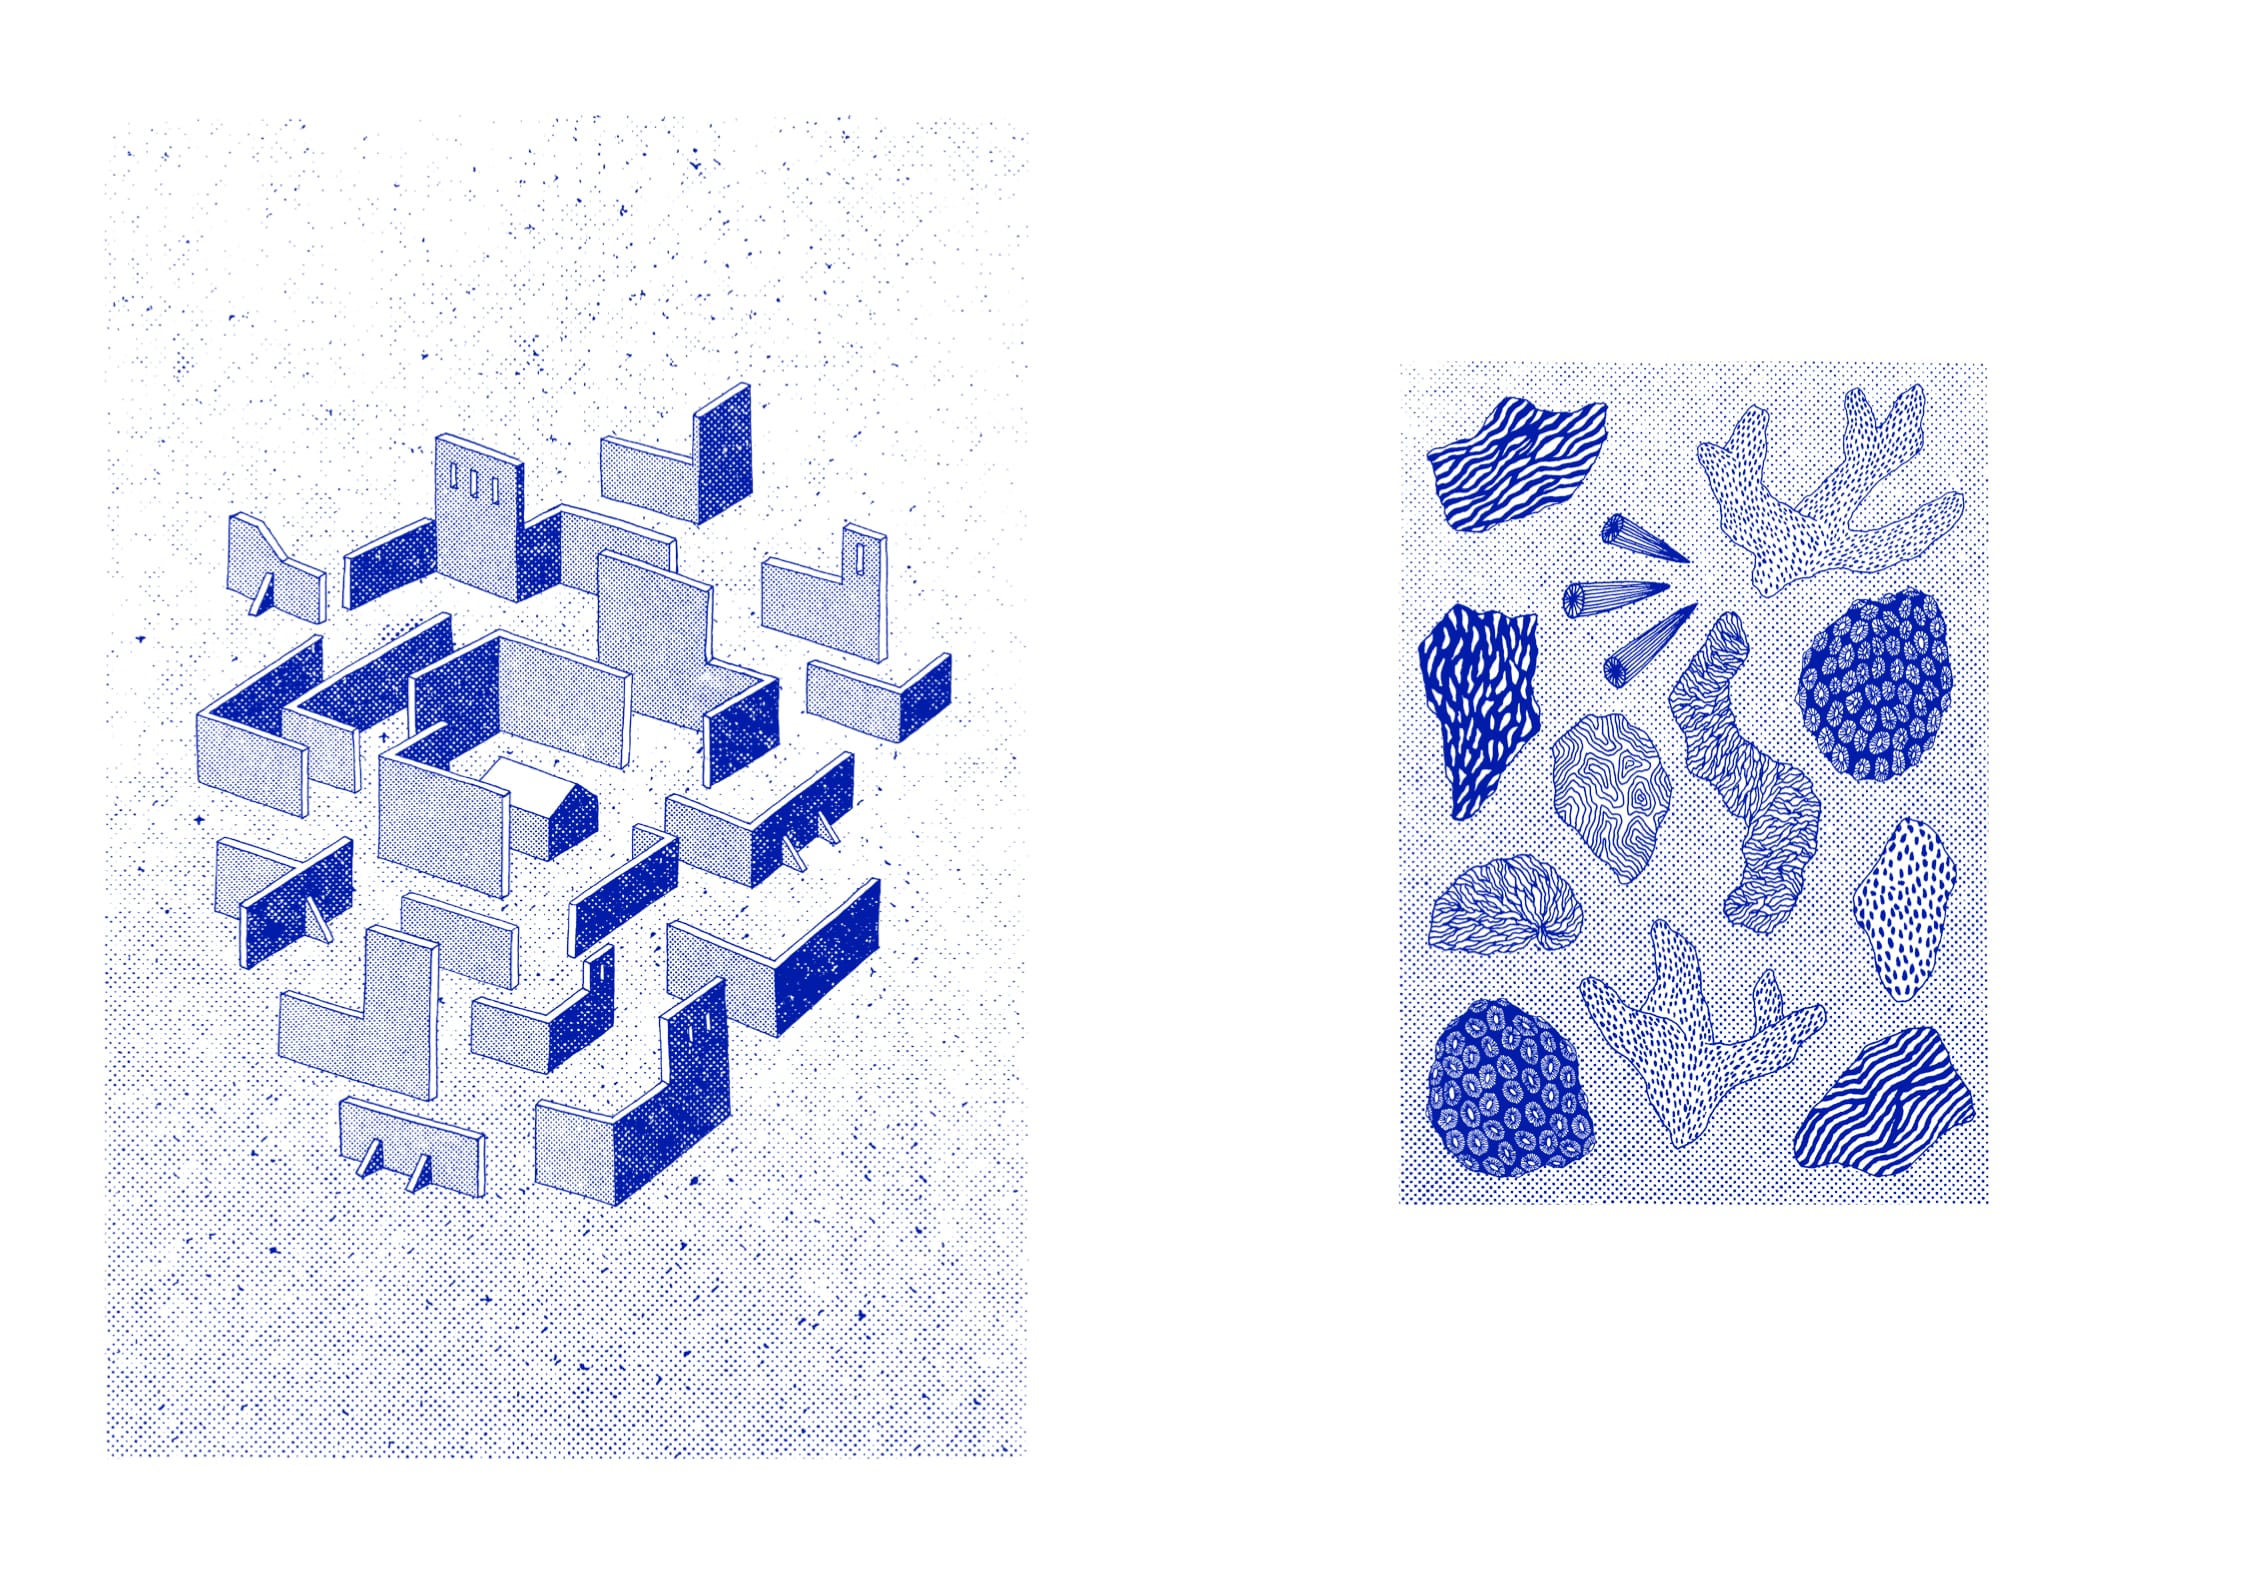 à gauche, des formes géométriques sui semblent être faites pour s'emboîter et former une maison. à droite, des formes plus organiques qui ressemblent à des coraux